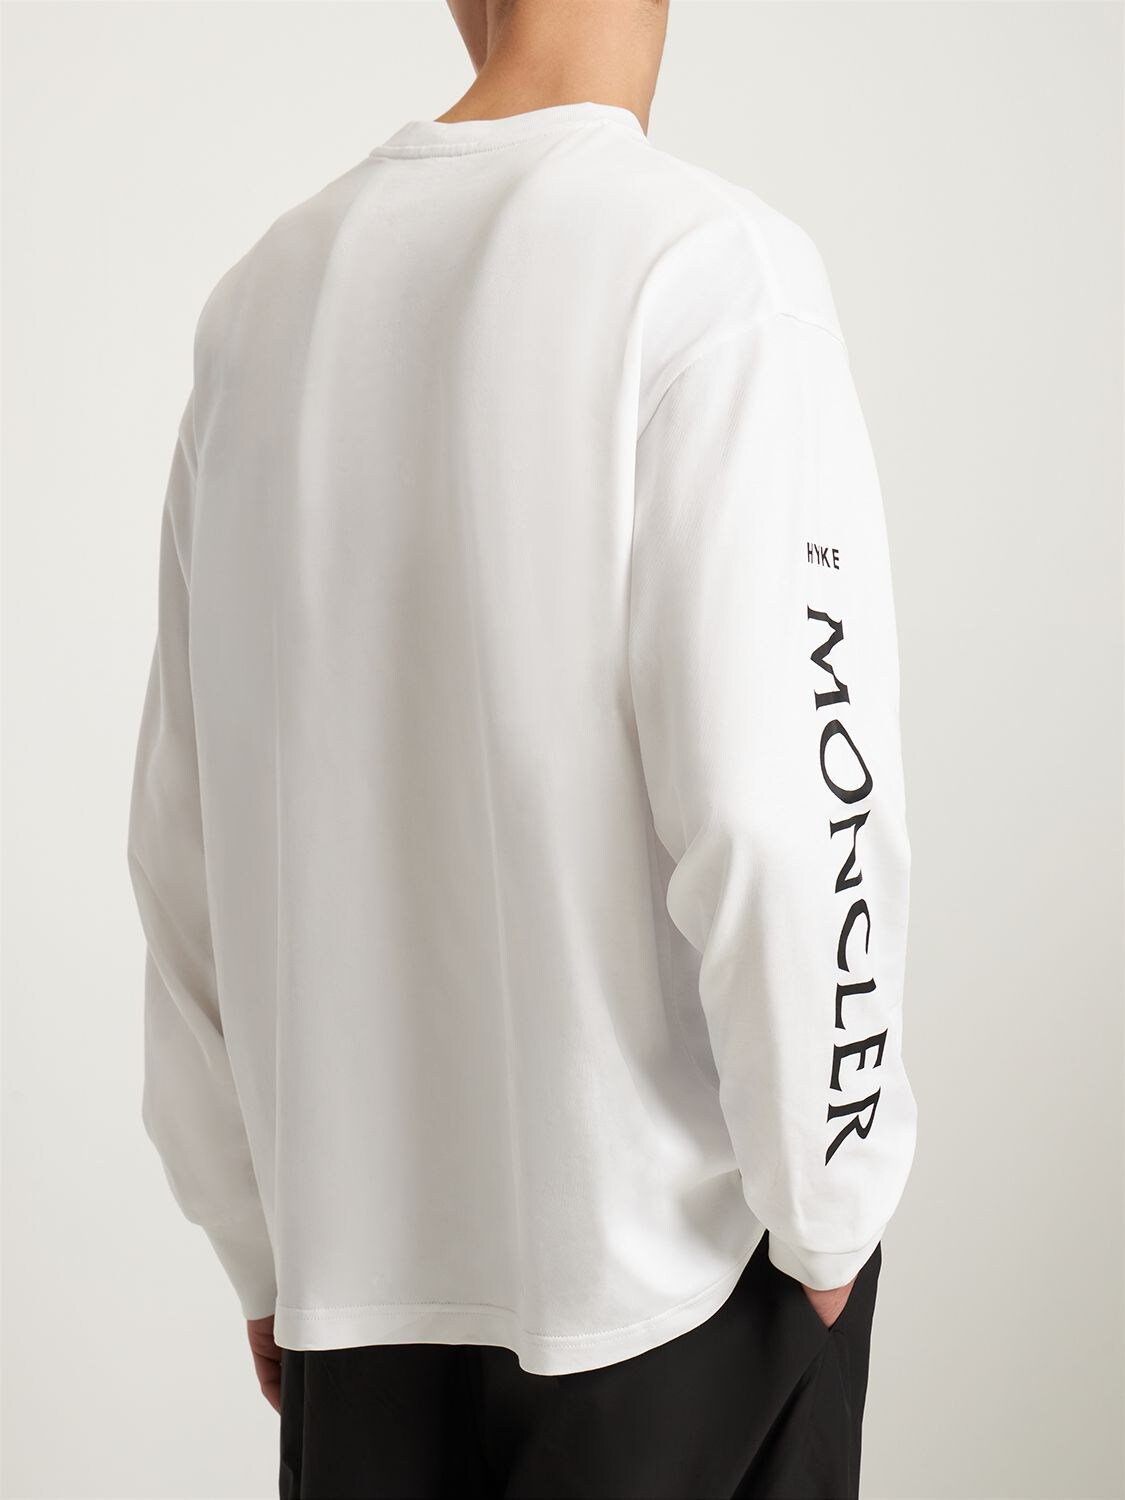 Moncler Genius 4 Moncler Hyke White Print Long Sleeve T-shirt